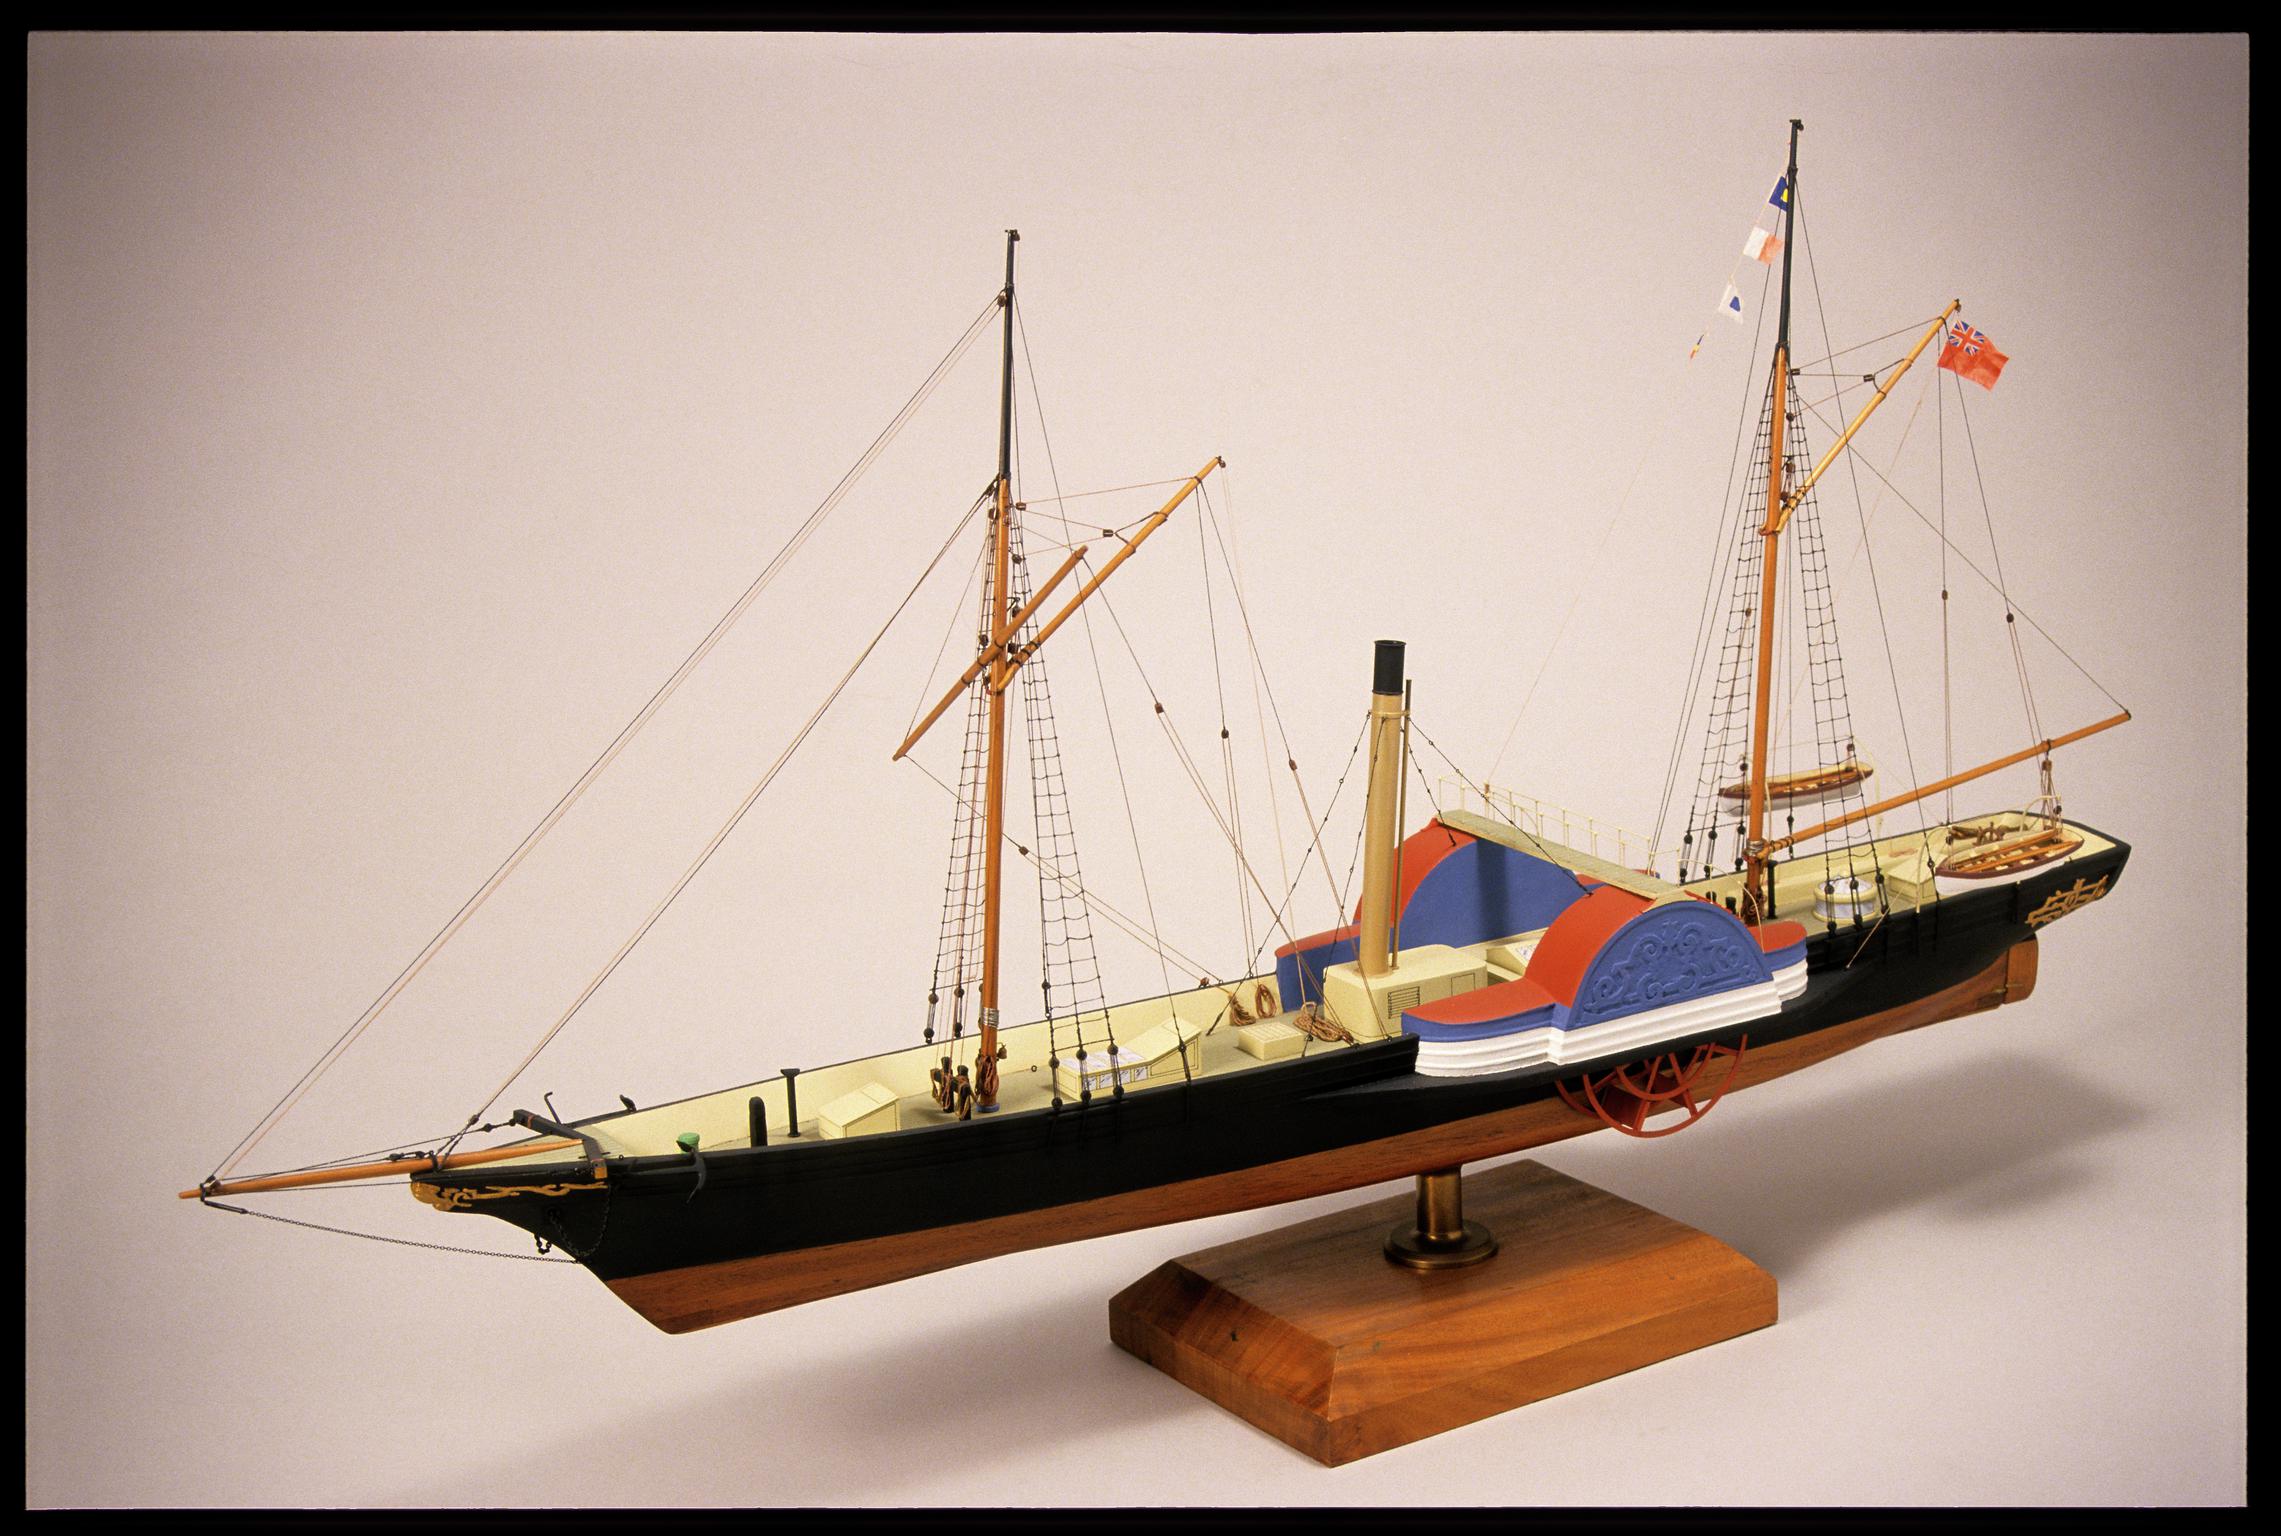 P.S. HIBERNIA, full hull ship model